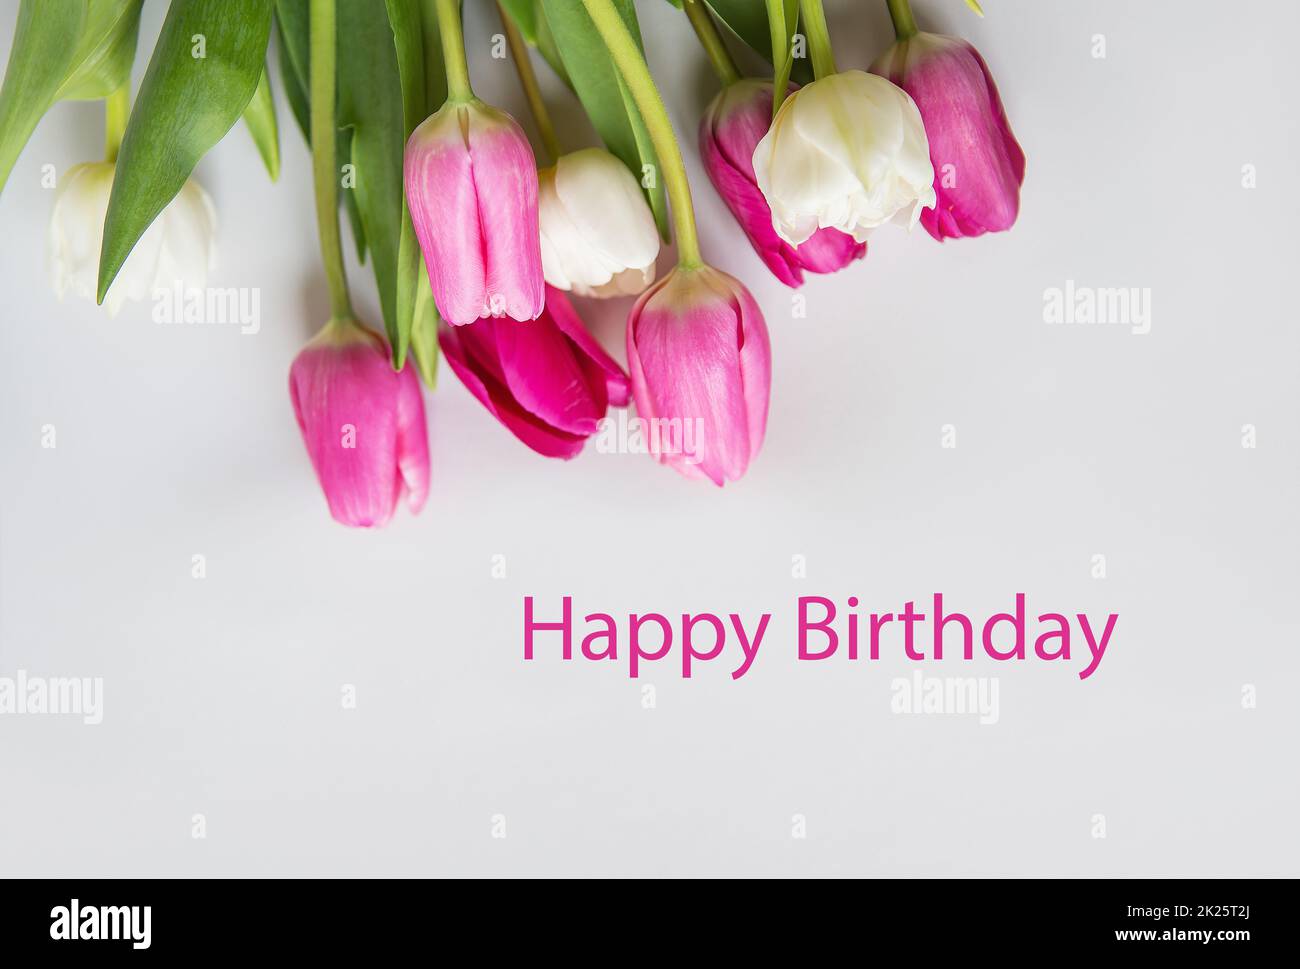 Herzlichen Glückwunsch zum Geburtstag. Wunderschönes Frühlingsbouquet mit pinkfarbenen und weißen Tulpen auf weißem Hintergrund. Postkarte fertig. Stockfoto